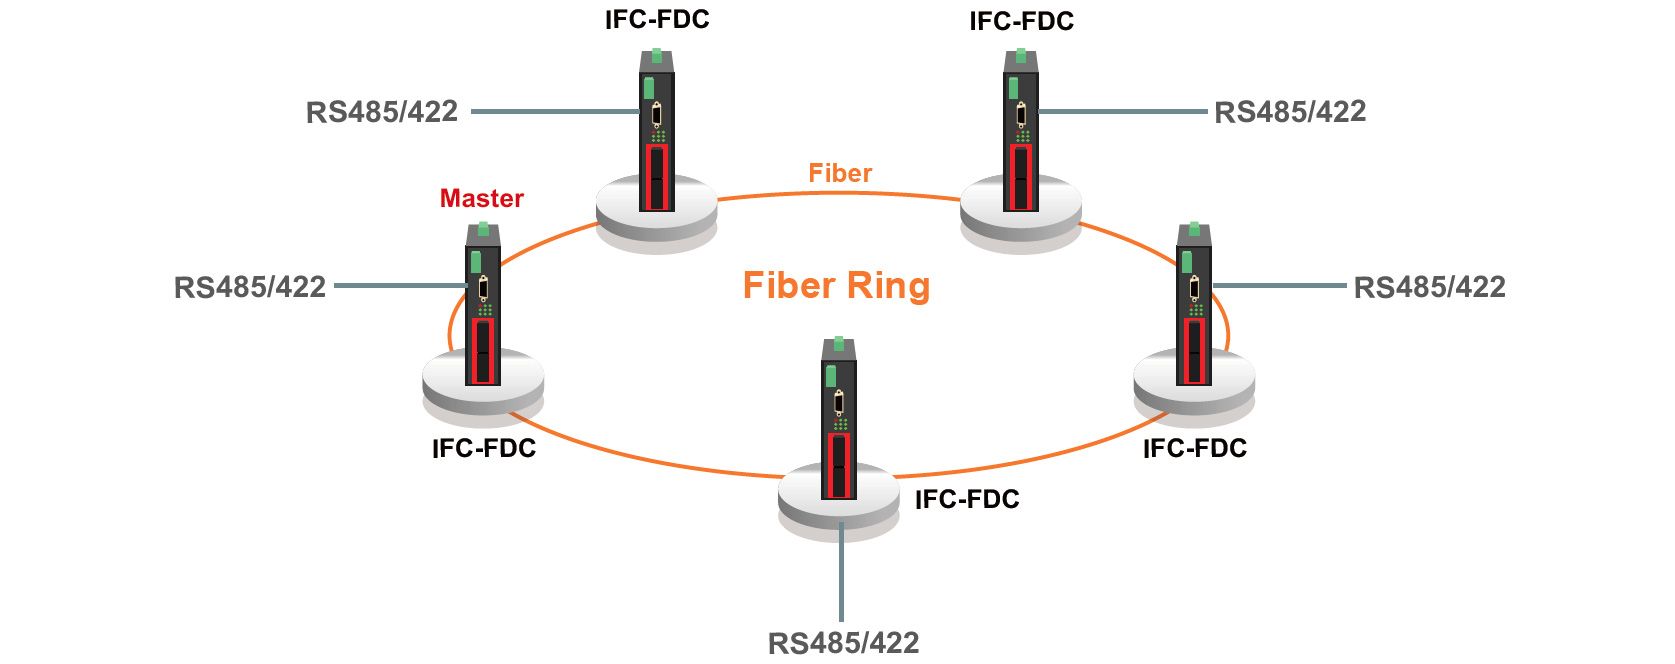 IFC-FDC Topologie de redondance en anneau de fibre et application